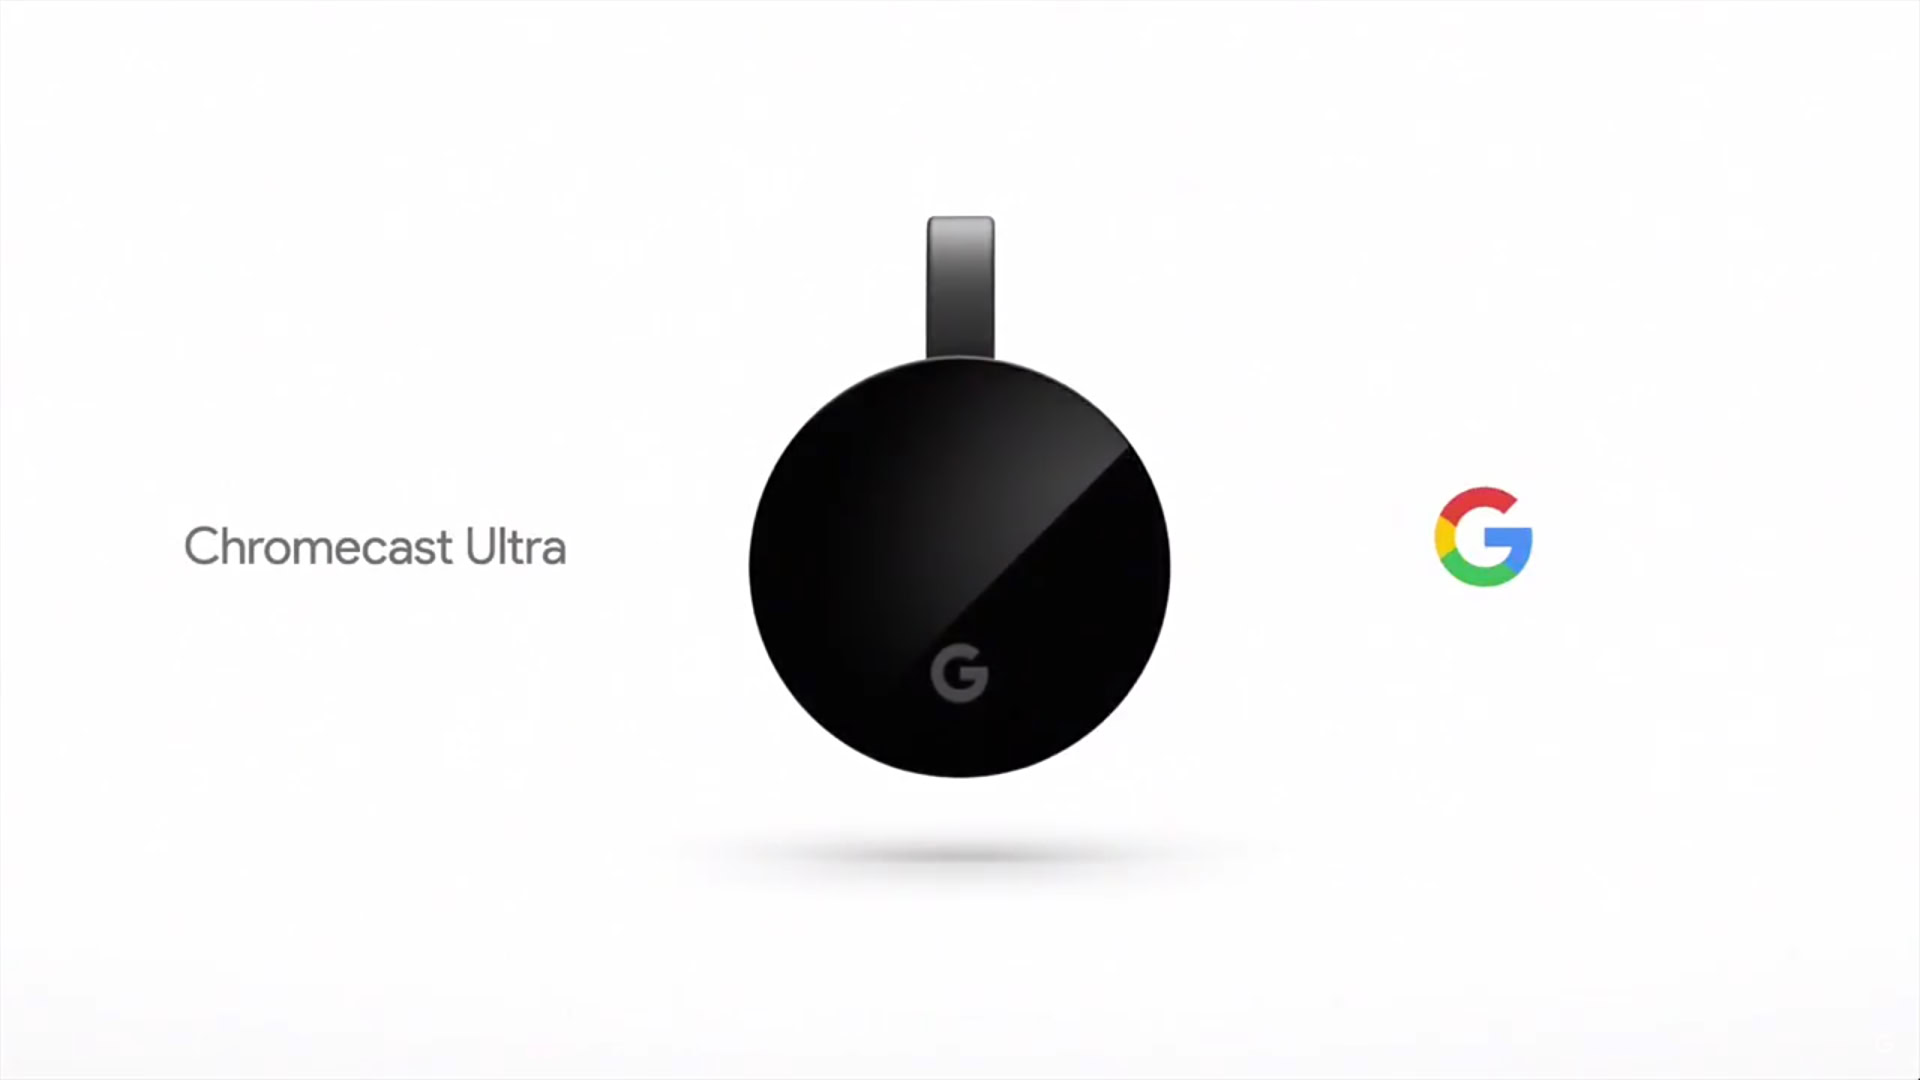 mario queiroz chromecast ultra -Google 2016